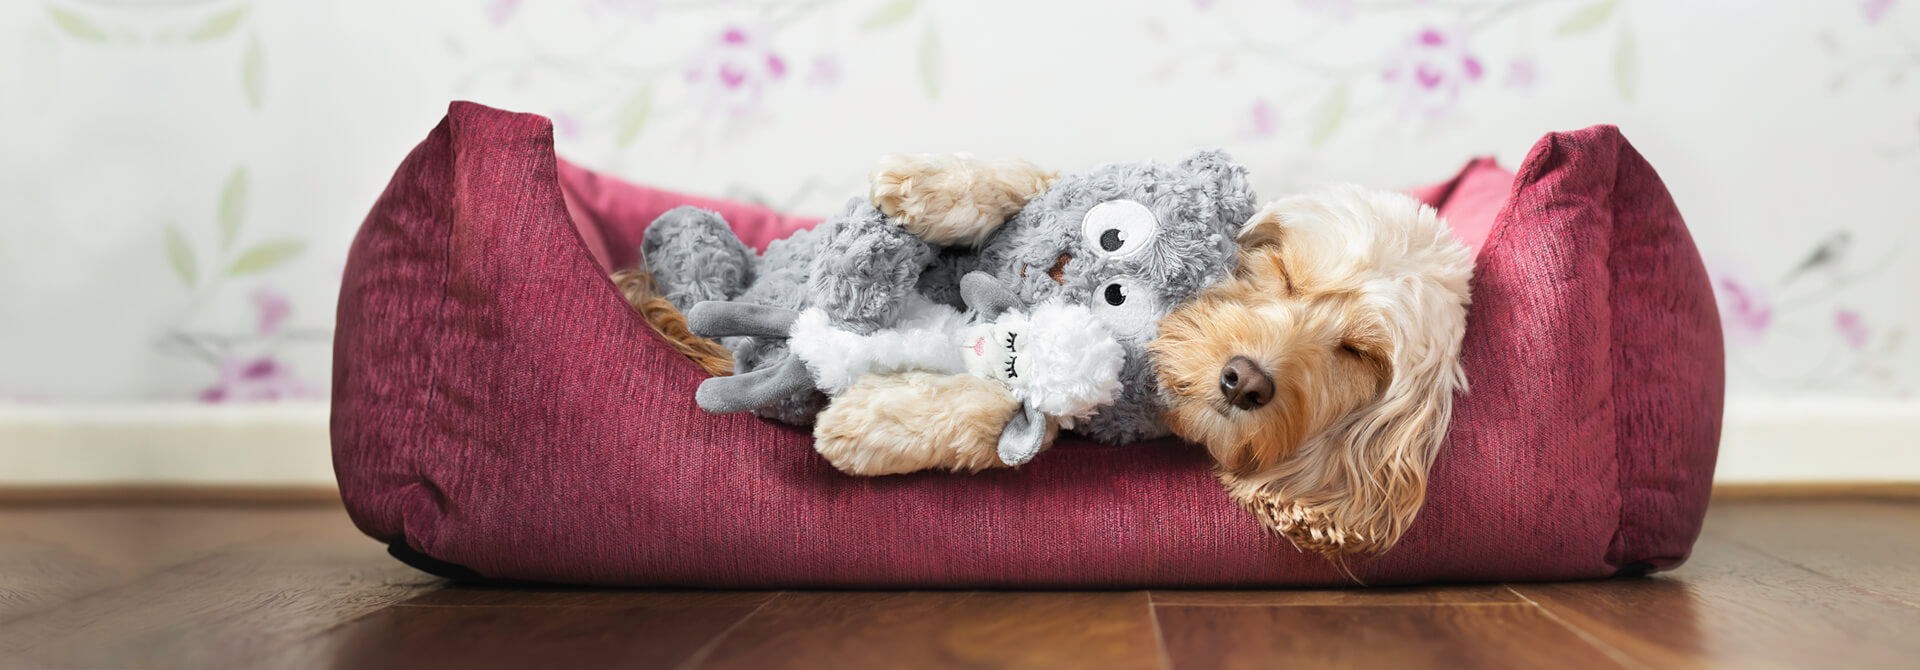 Dog snuggling with a teddy bear plush dog toy